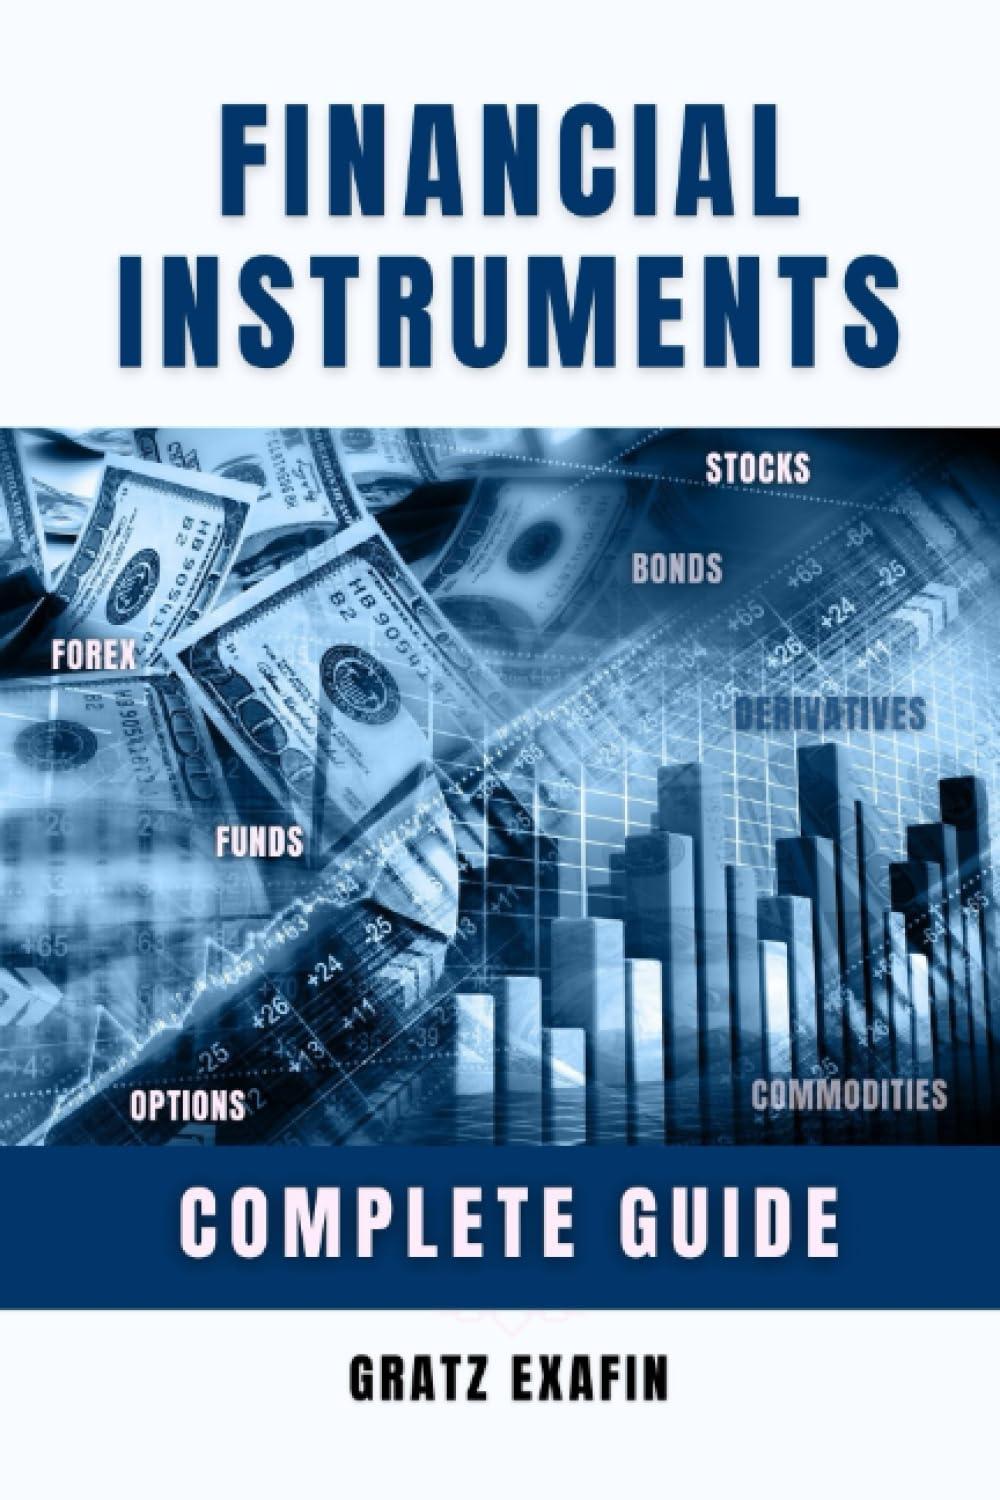 financial instruments 1st edition gratz exafin b0c9s99qzd, 979-8851770456